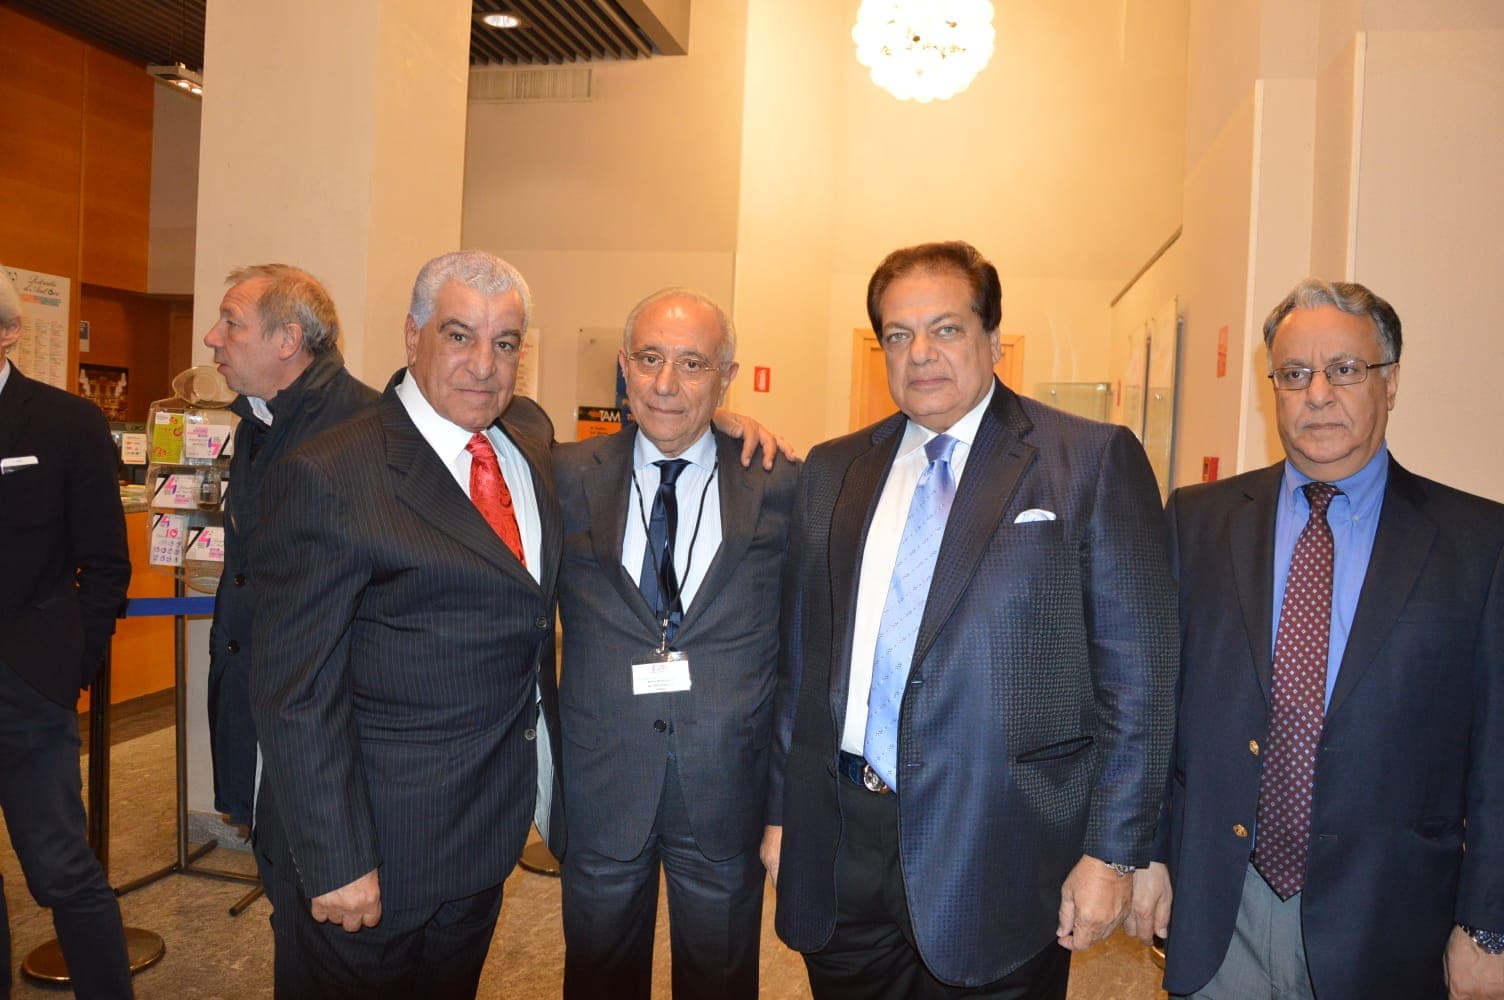 القنصل العام في ميلانو يشارك في حفل تكريم زاهي حواس وأبو العينين في إيطاليا| صور